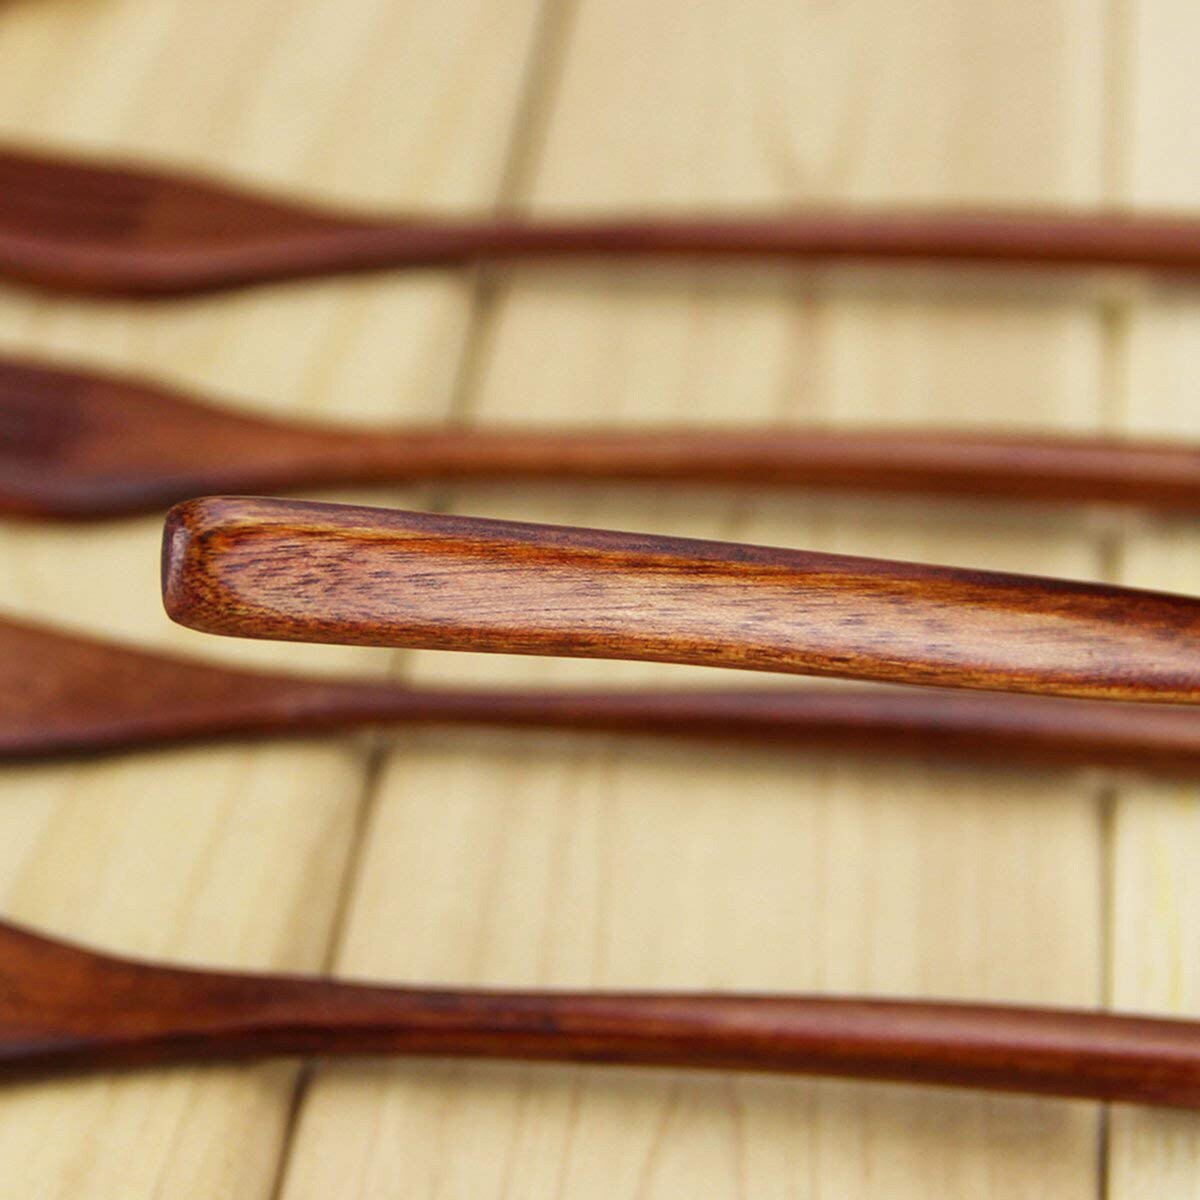 Træ gafler , 5 stykker miljøvenlig japansk træ salat aftensmad gaffel bordservice servise til børn voksen  (5 stykker intet reb træ